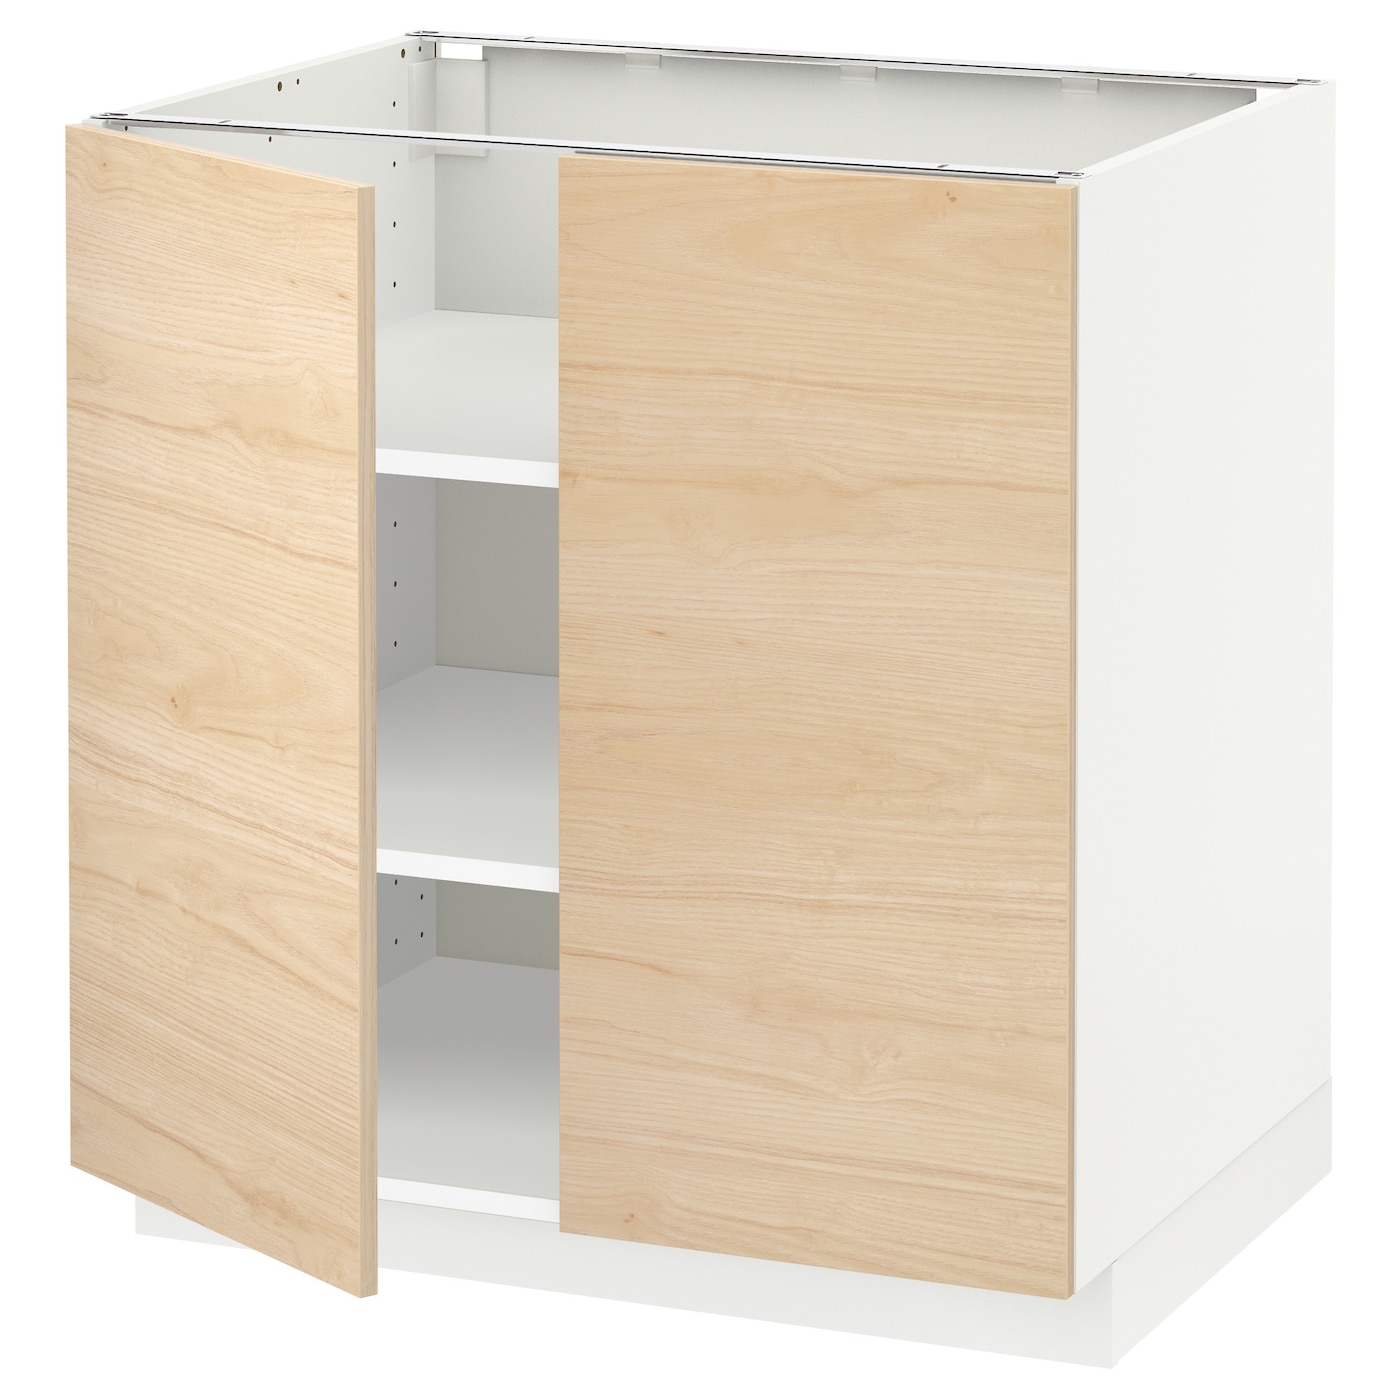 Напольный шкаф - IKEA METOD, 88x62x80см, белый/светлый ясень, МЕТОД ИКЕА